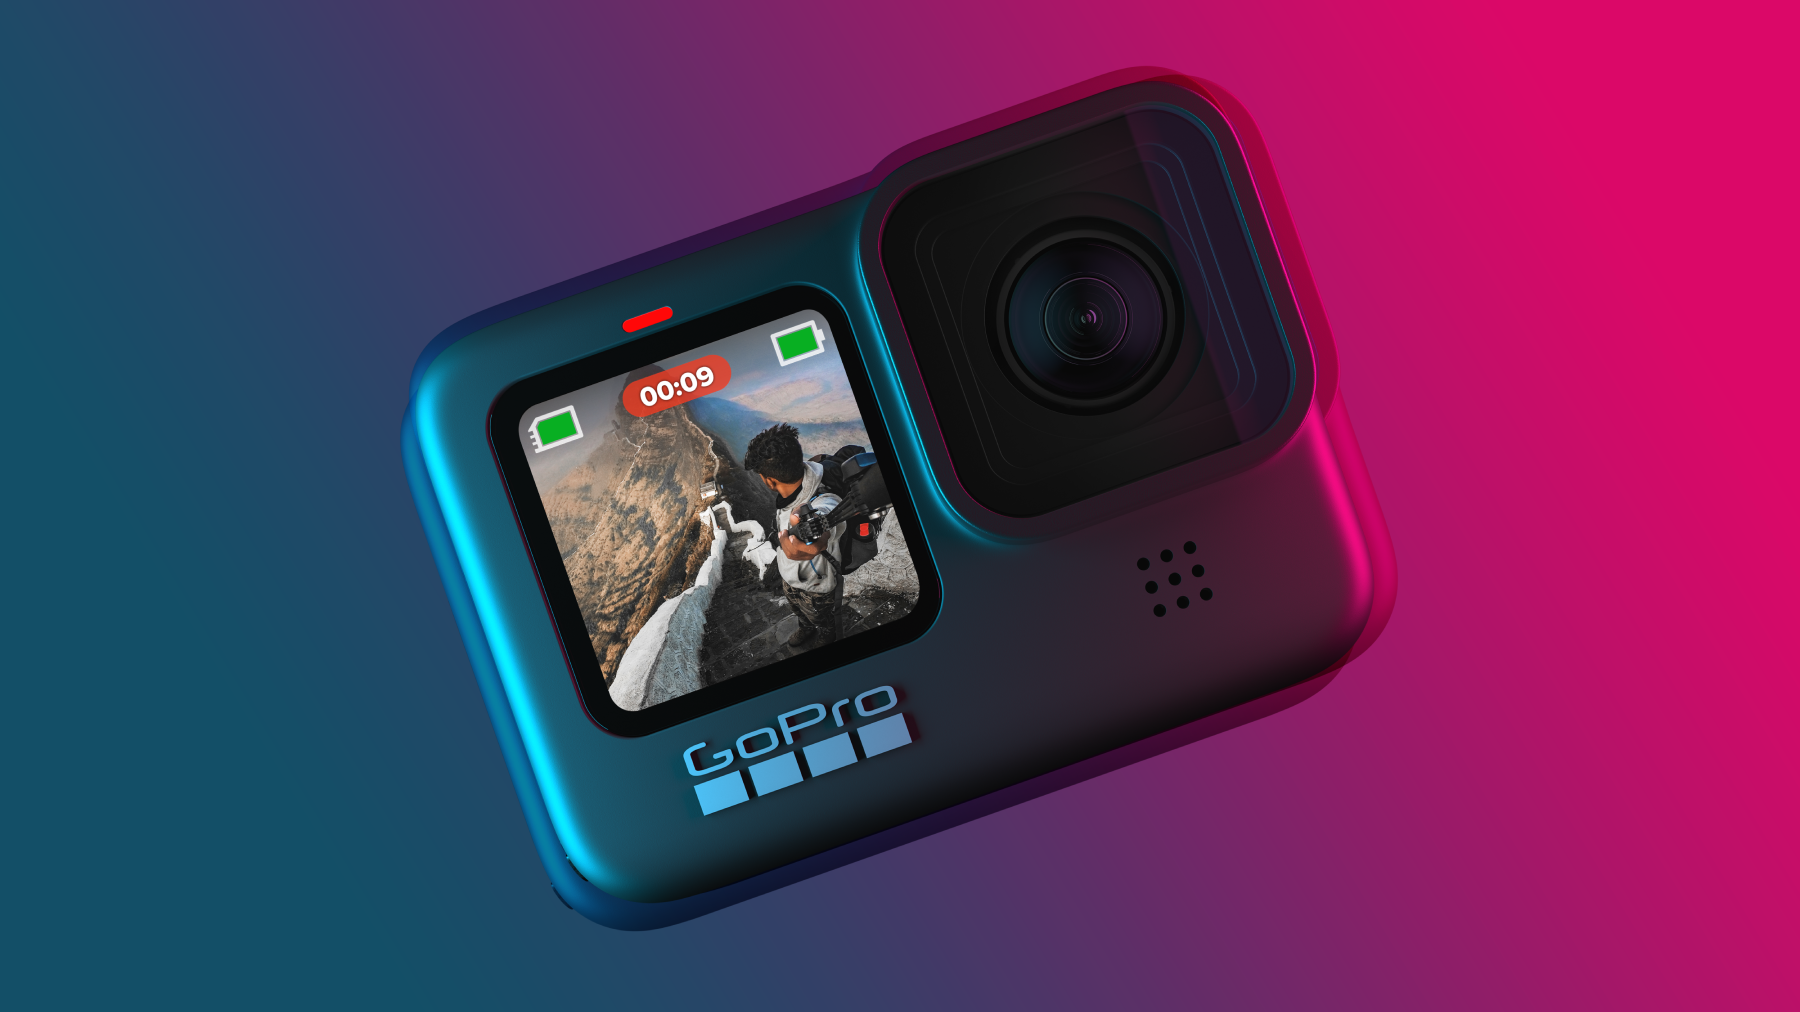 Gopro lança hero9 black; veja as novidades. A gopro anunciou sua nova câmera, a hero9 black, capaz de gravar vídeos em 5k e tirar fotos com até 20 megapixels.